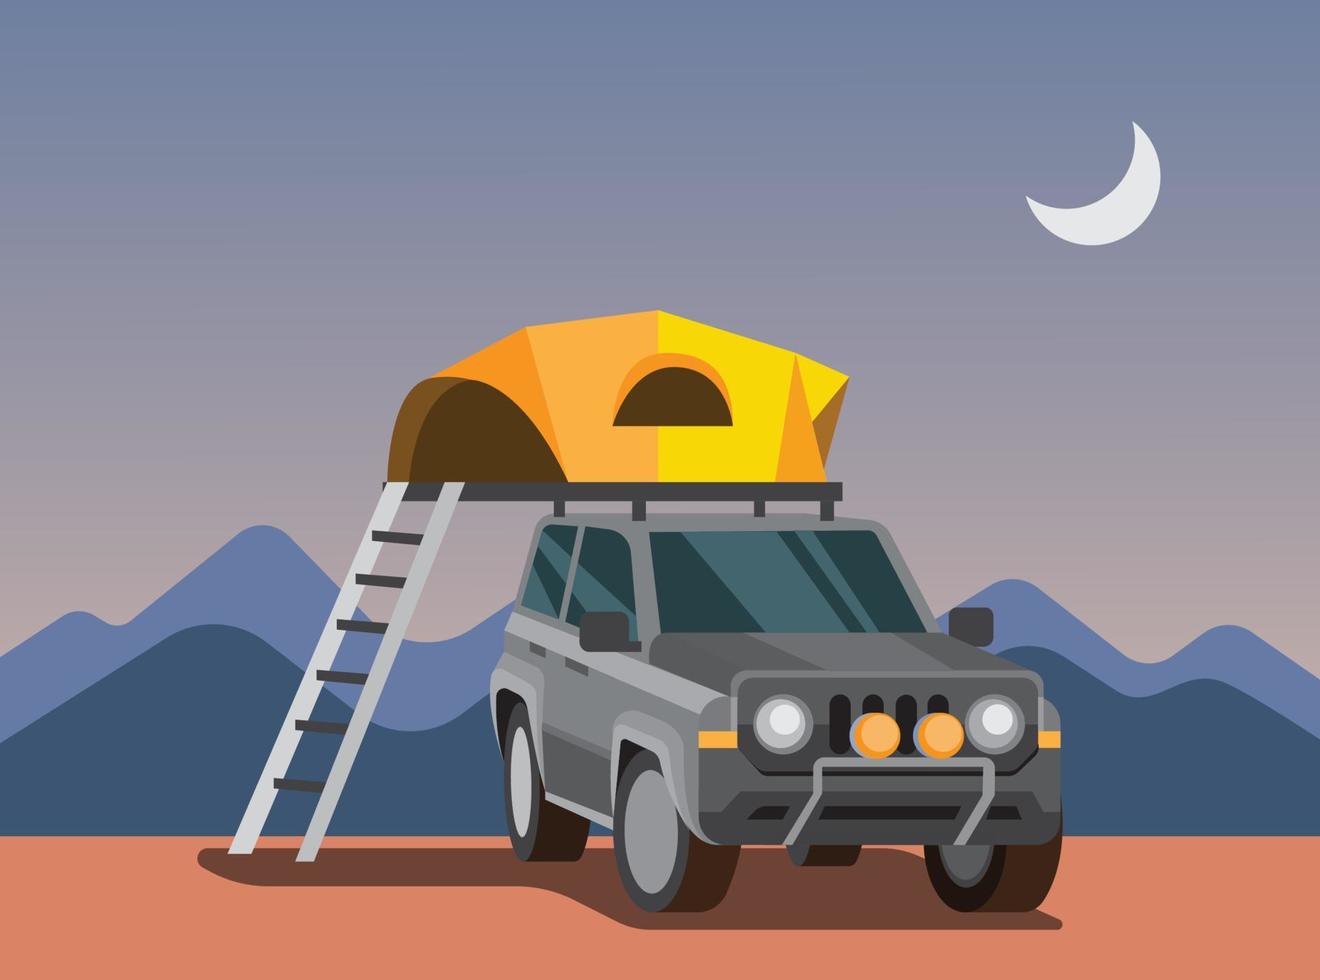 spedizione con auto suv, tenda da campeggio auto, tenda sul tetto dell'auto, viaggio avventuroso, illustrazione vettoriale piatta